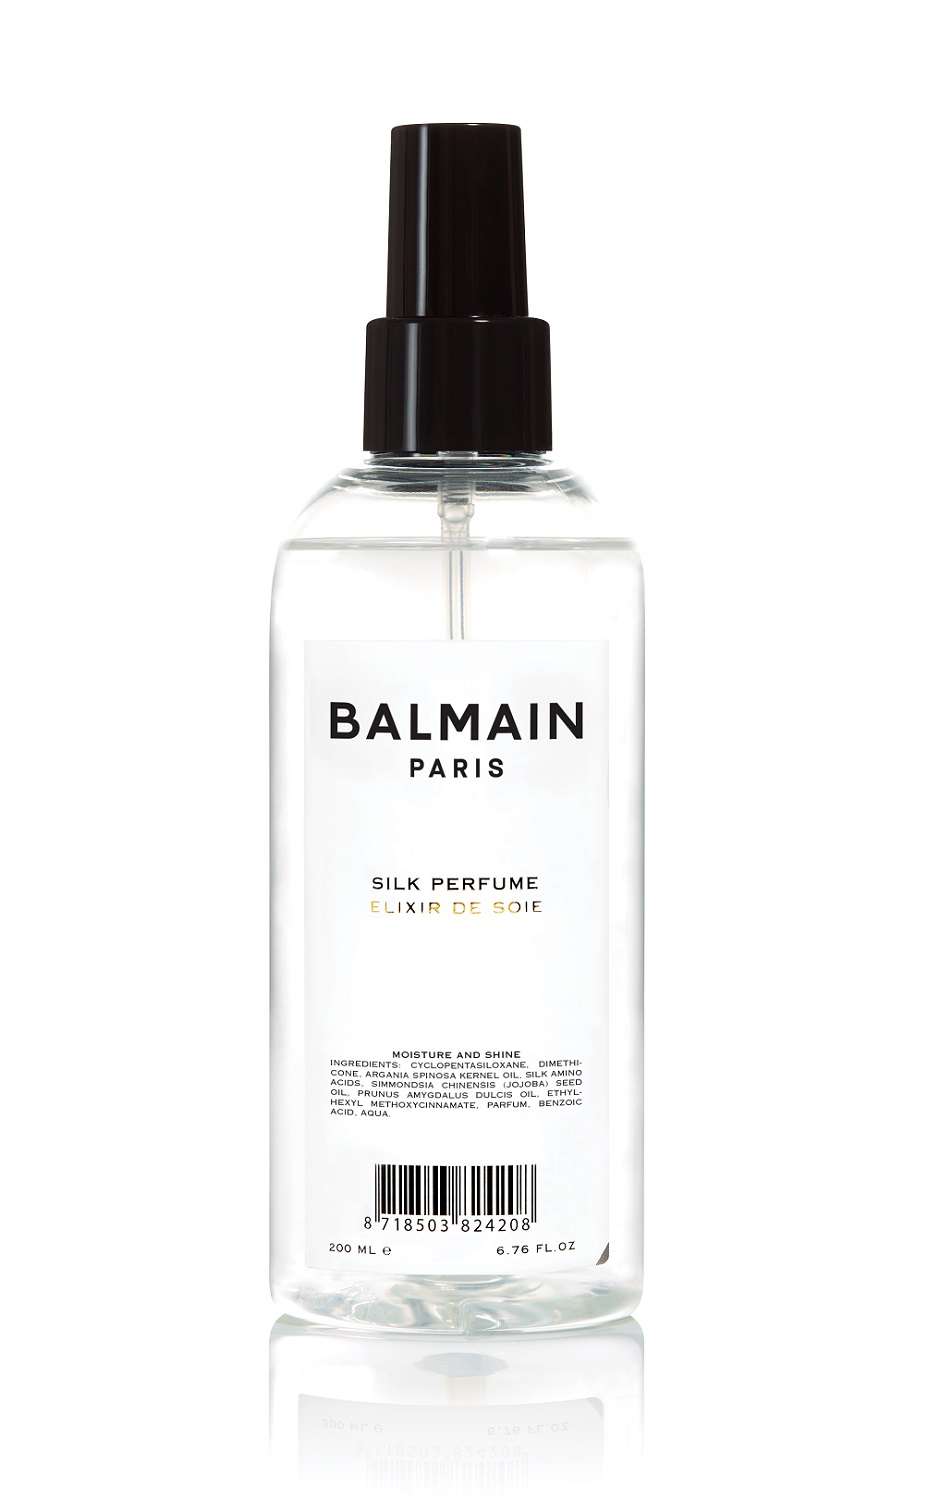 Balmain Шелковая дымка для волос Silk perfume без дозатора-помпы, 200 мл (Balmain, Стайлинг) balmain silk perfume шелковая дымка для волос 200 ml